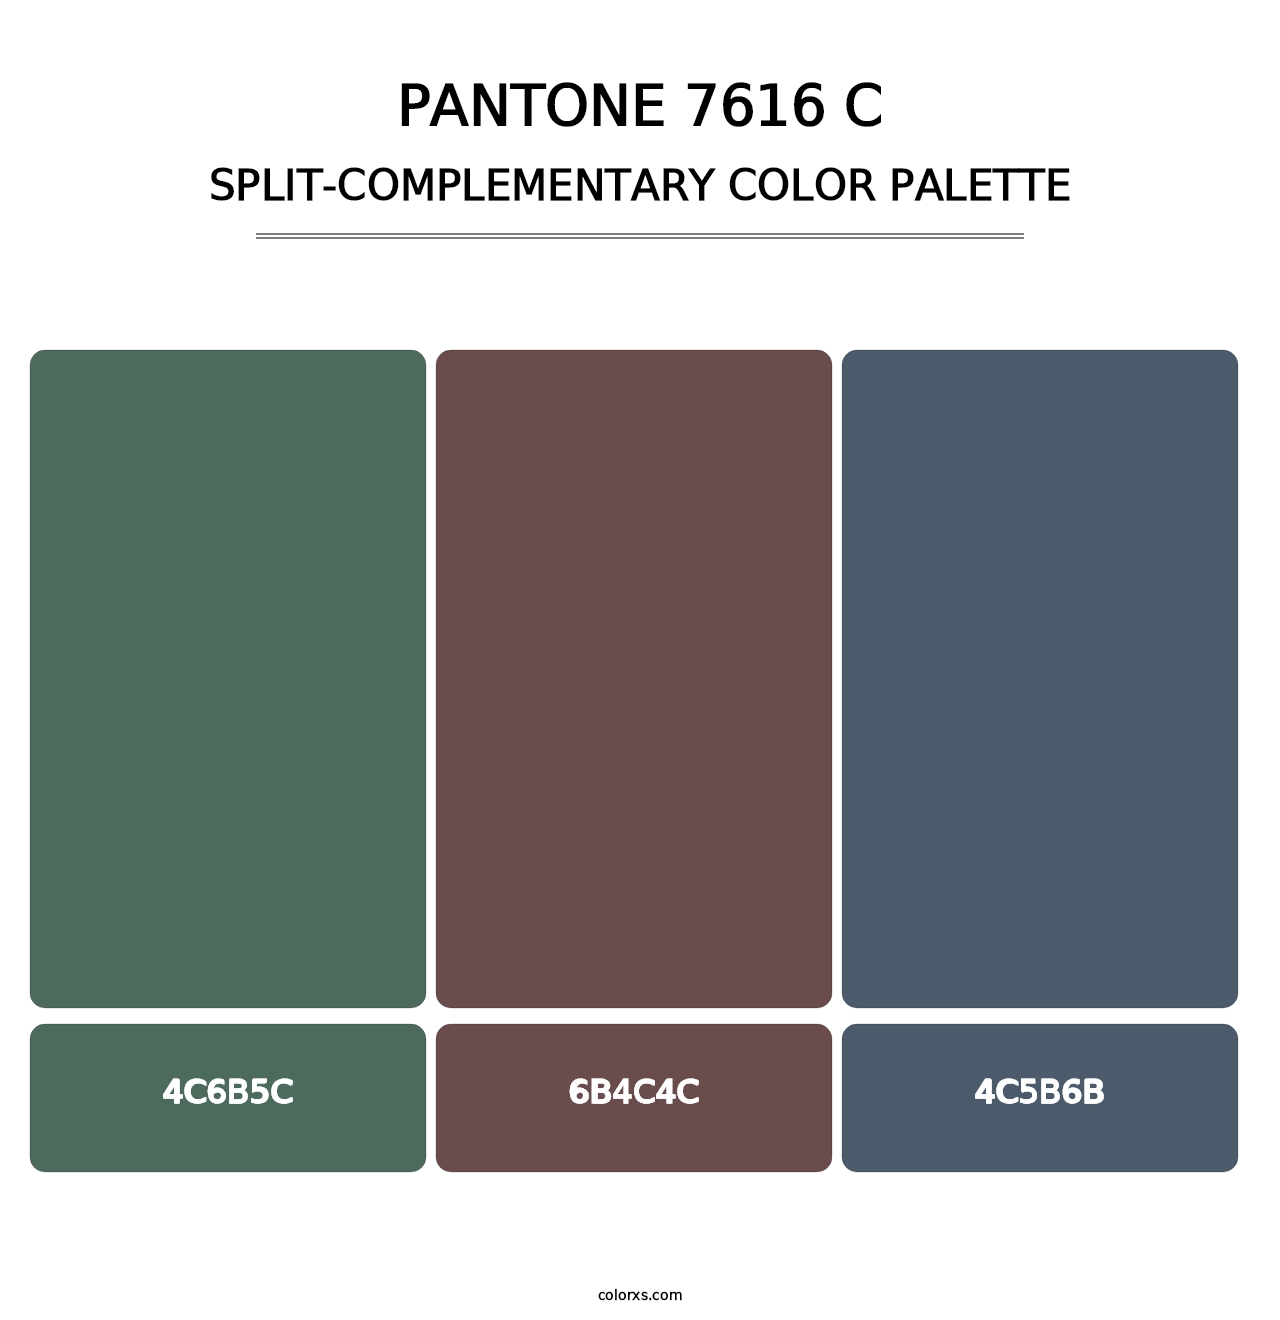 PANTONE 7616 C - Split-Complementary Color Palette